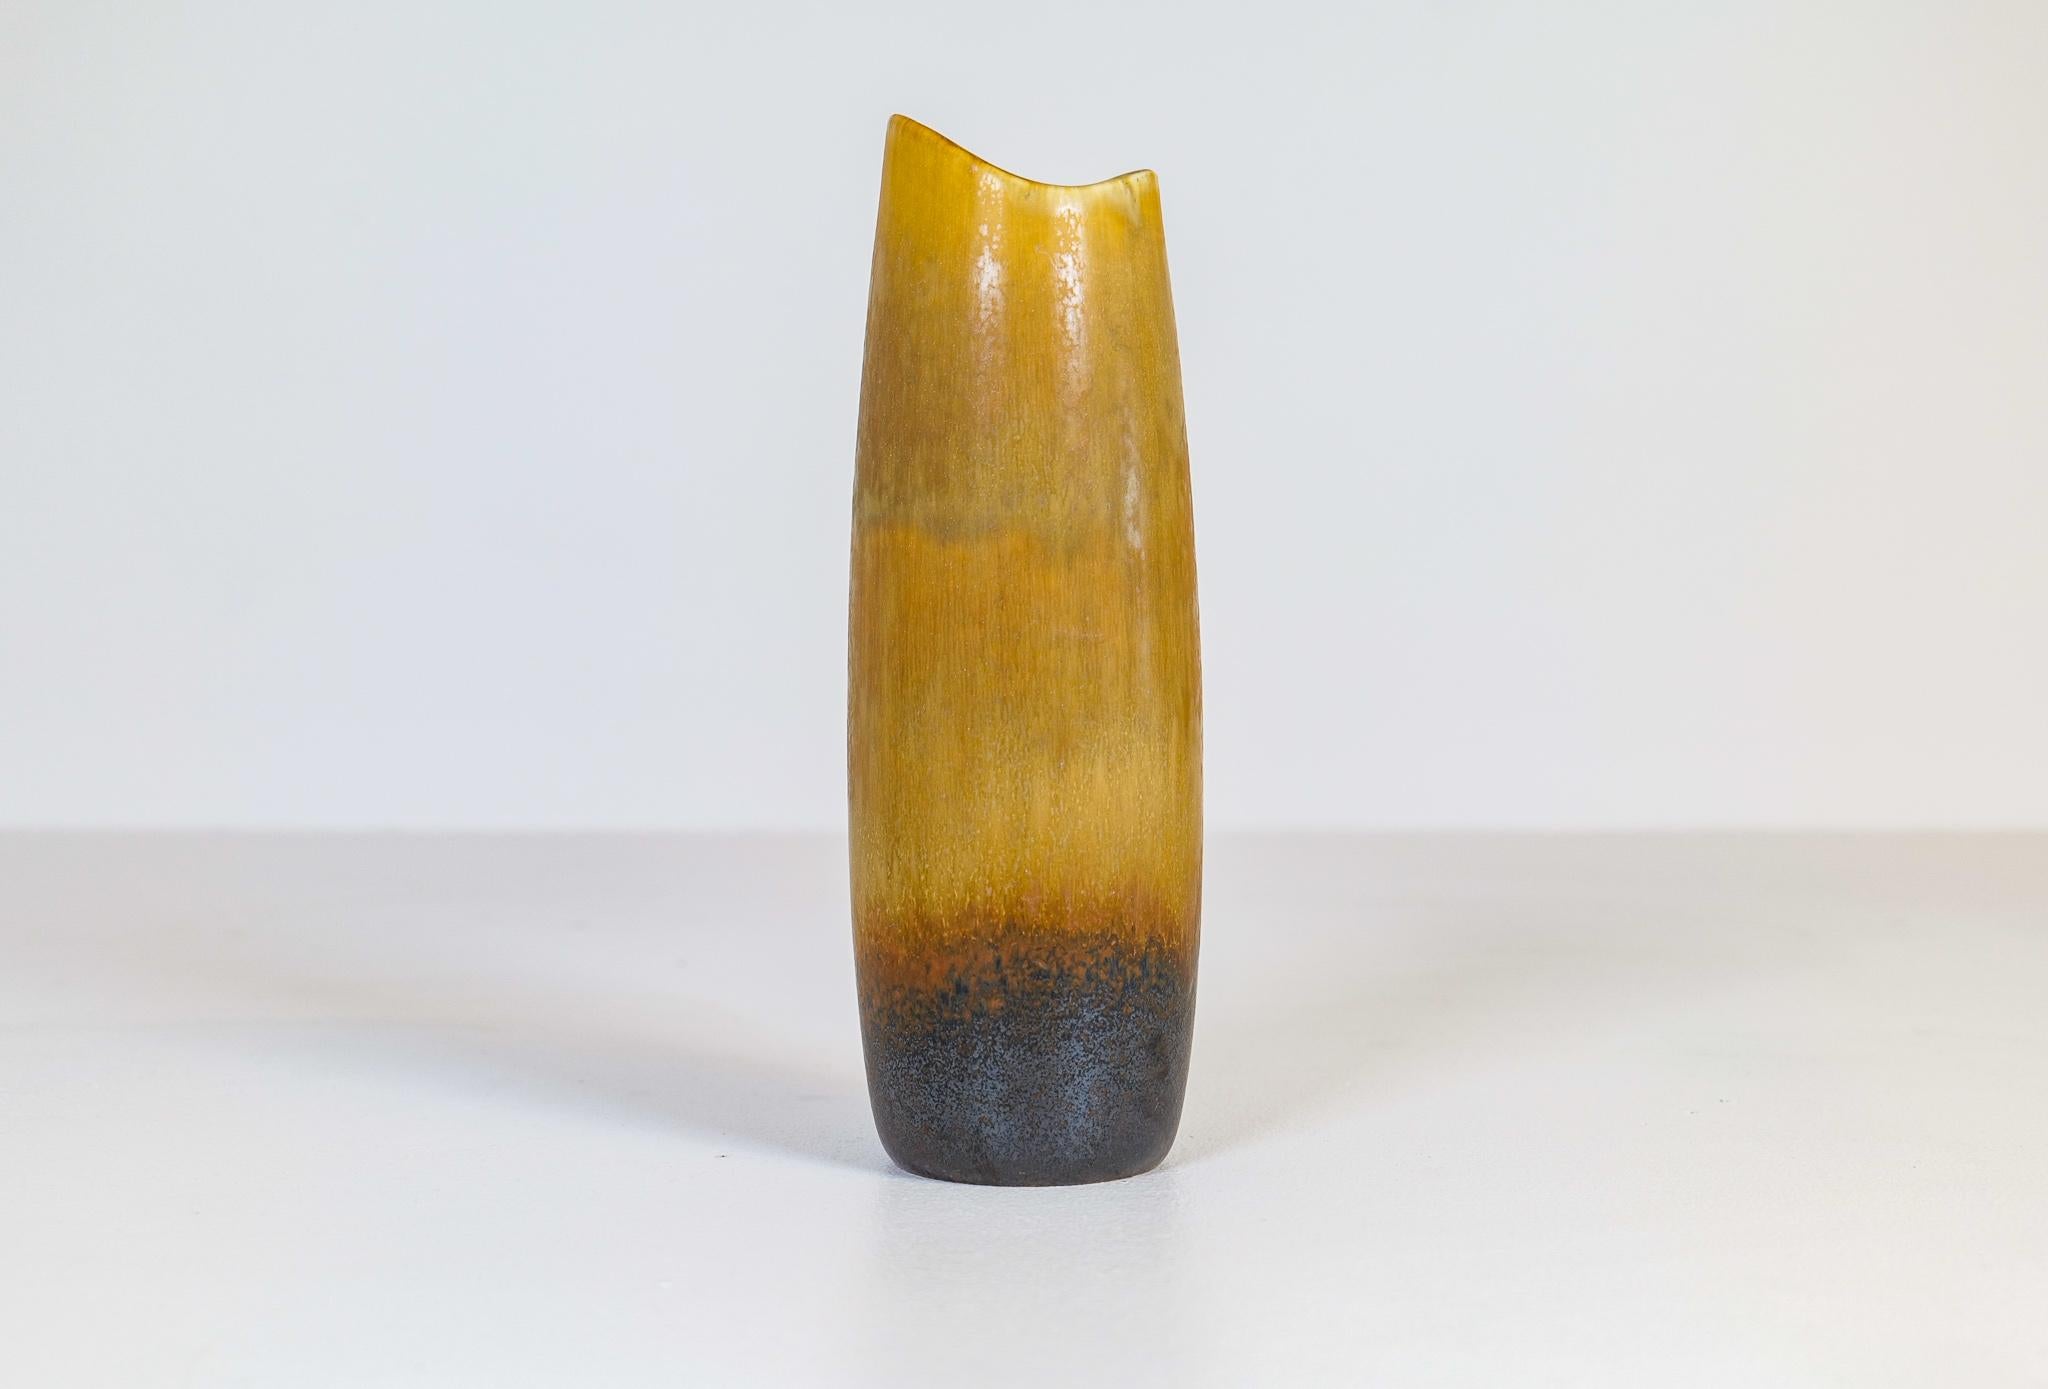 Diese fantastische Vase wurde in den 1950er Jahren in Schweden bei Rörstrand hergestellt und von Gunnar Nylund entworfen. 
Wunderschön in seiner wechselnden Glasurfarbe und atemberaubenden Form. 

Guter Zustand. 

Maße: H 27 cm, T 10 cm.
  